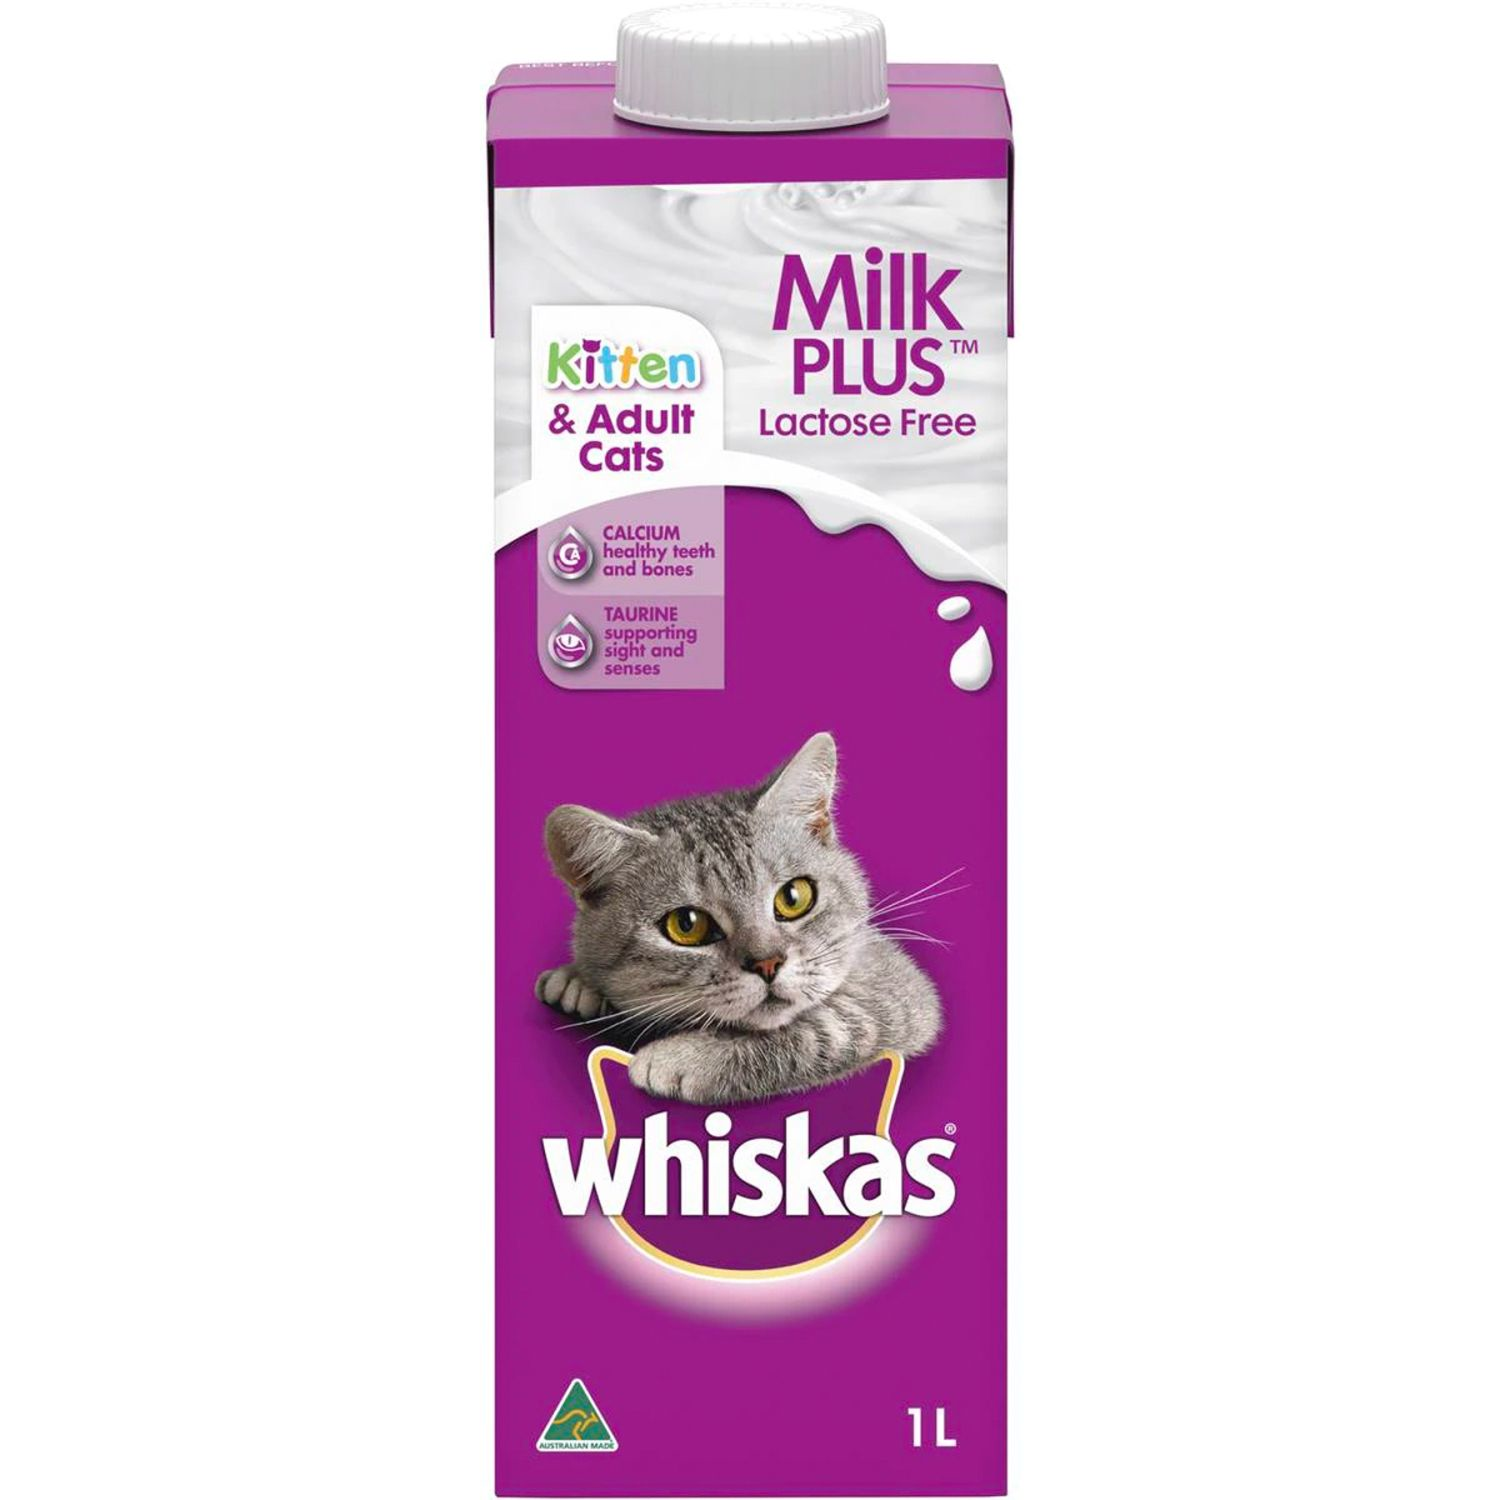 Whiskas Cat Milk Plus, 1 Litre